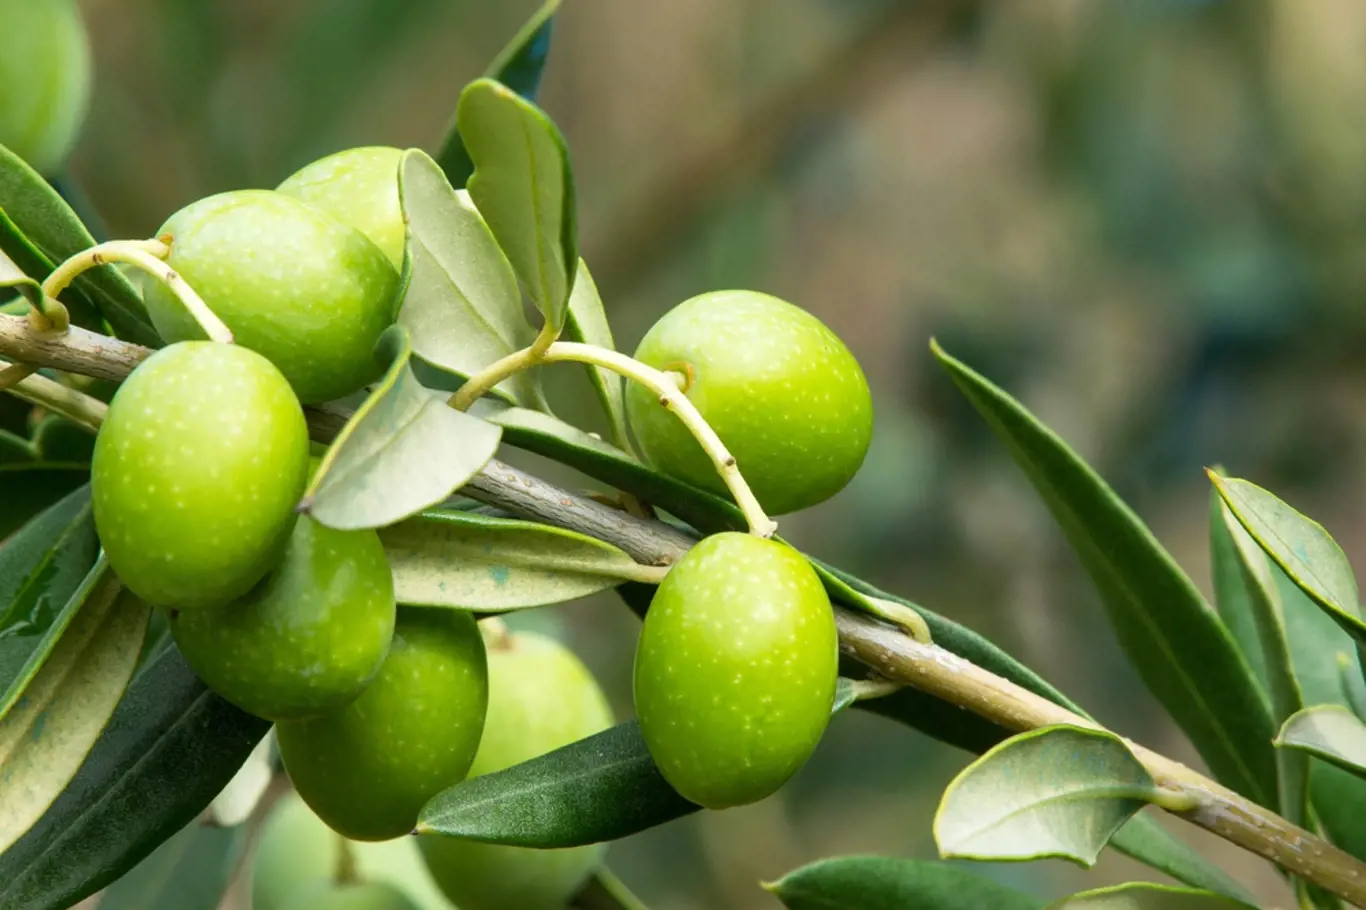 Větvička olivovníku s olivami.